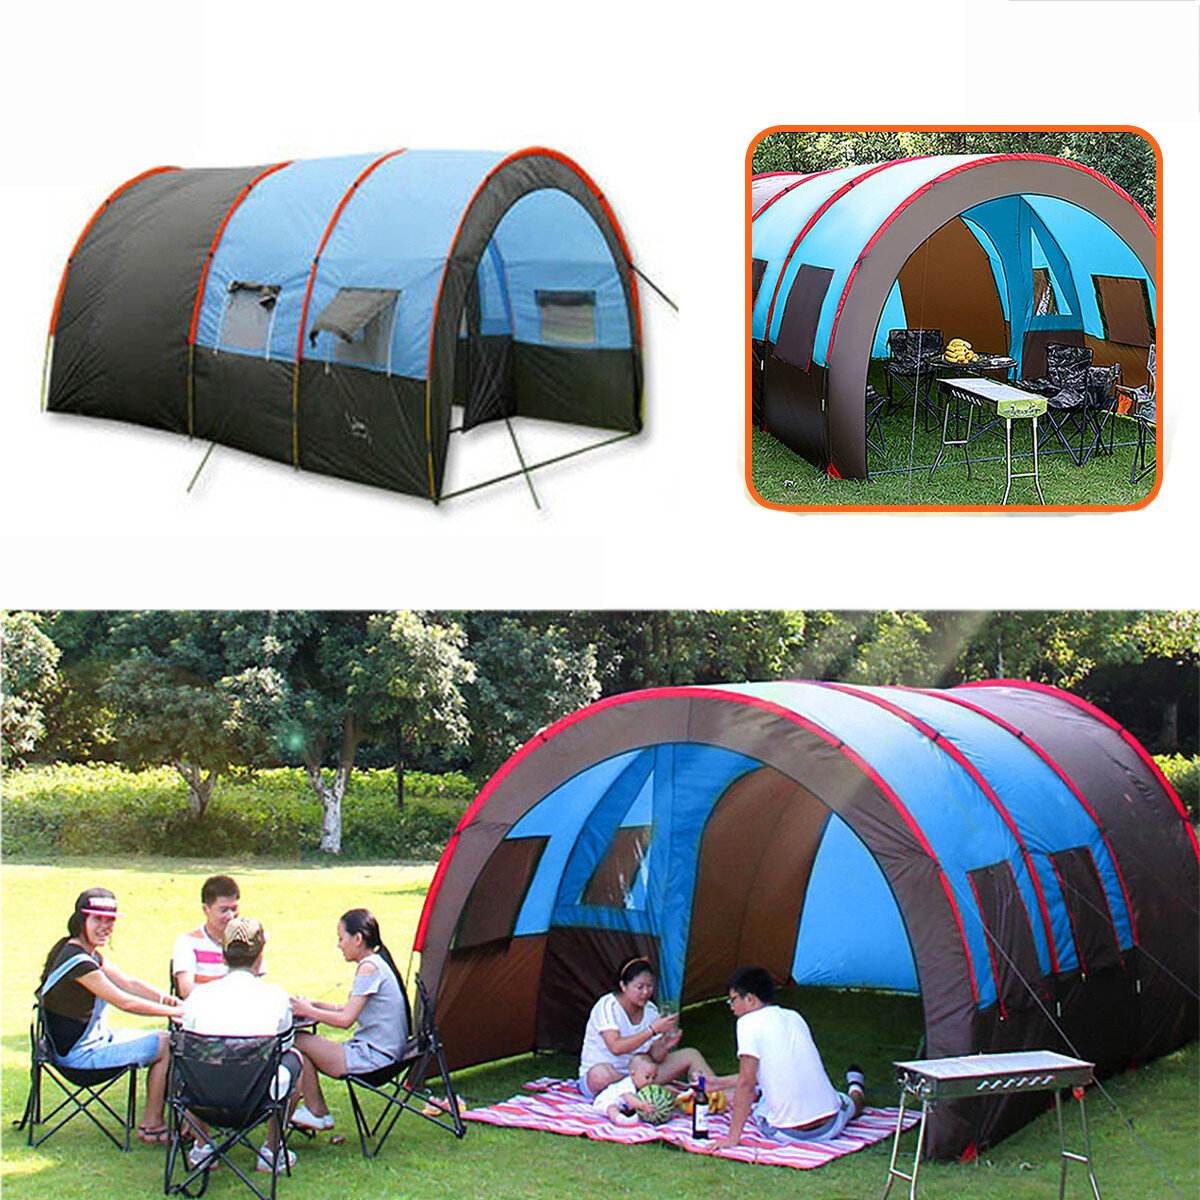 Tente de camping grande capacité pour 8-10 personnes, étanche, portable, à double couche et idéale pour les voyages et les randonnées en plein air.